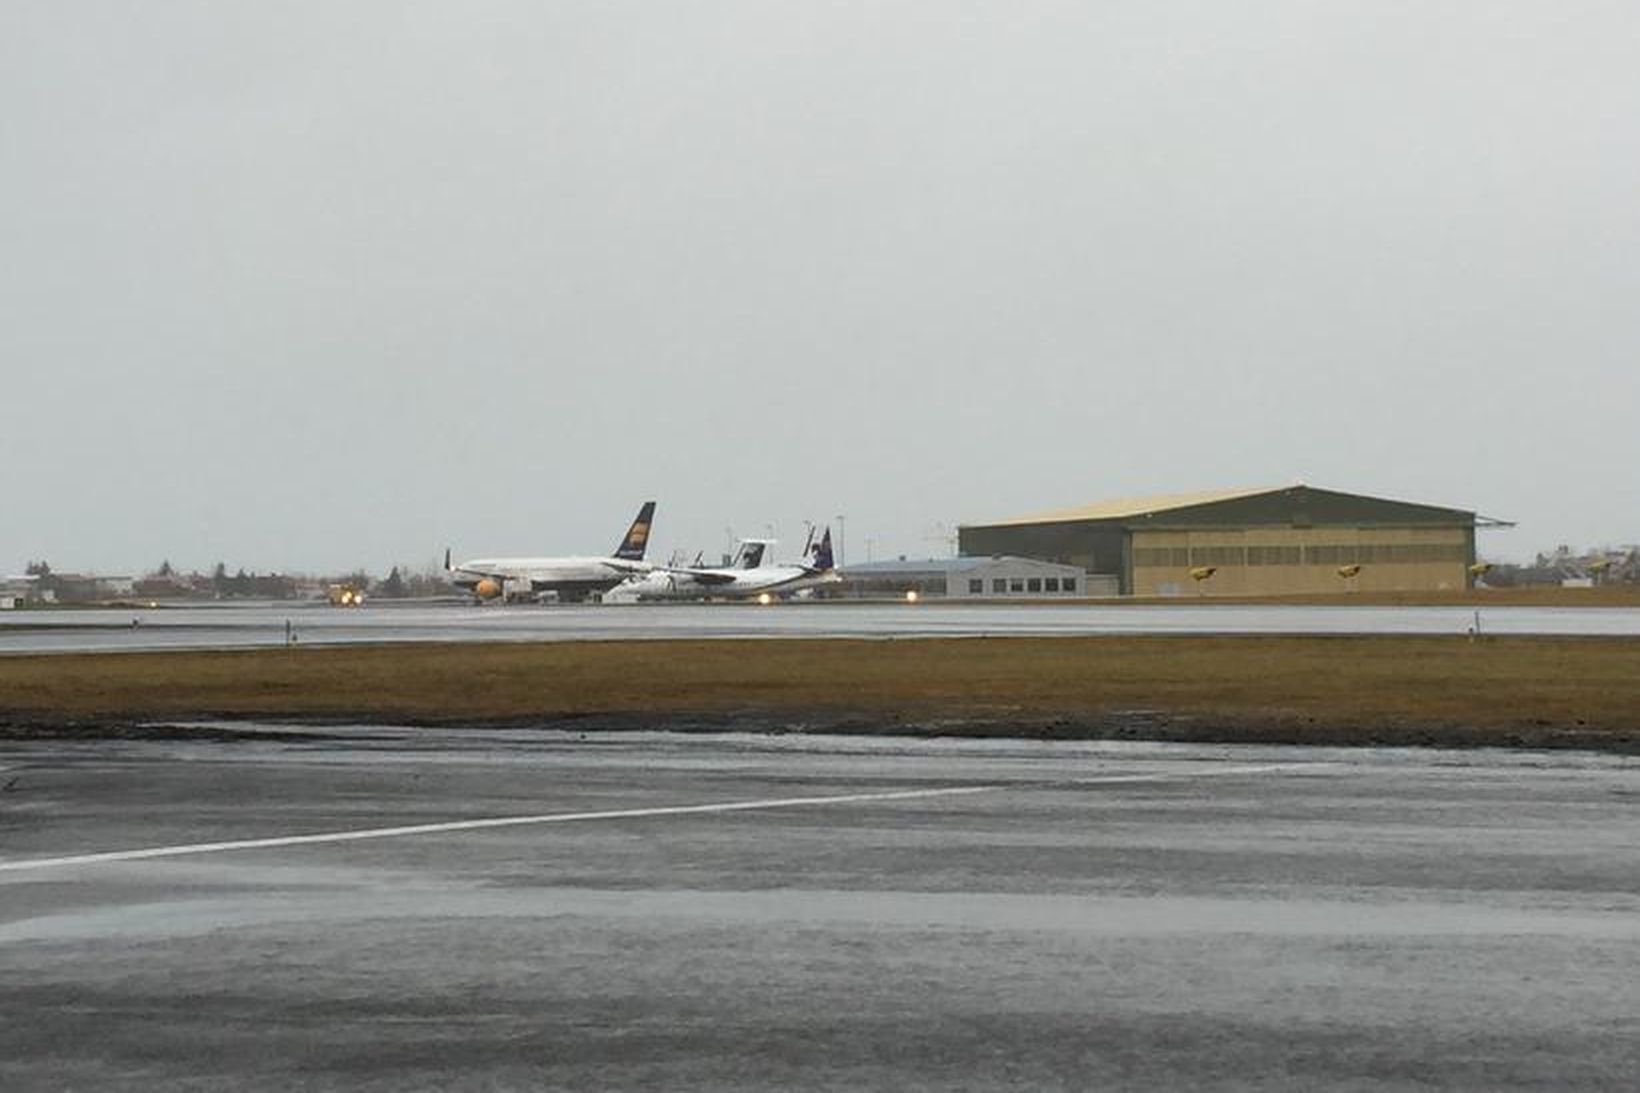 Farþegaþota Icelandair á Reykjavíkurflugvelli.